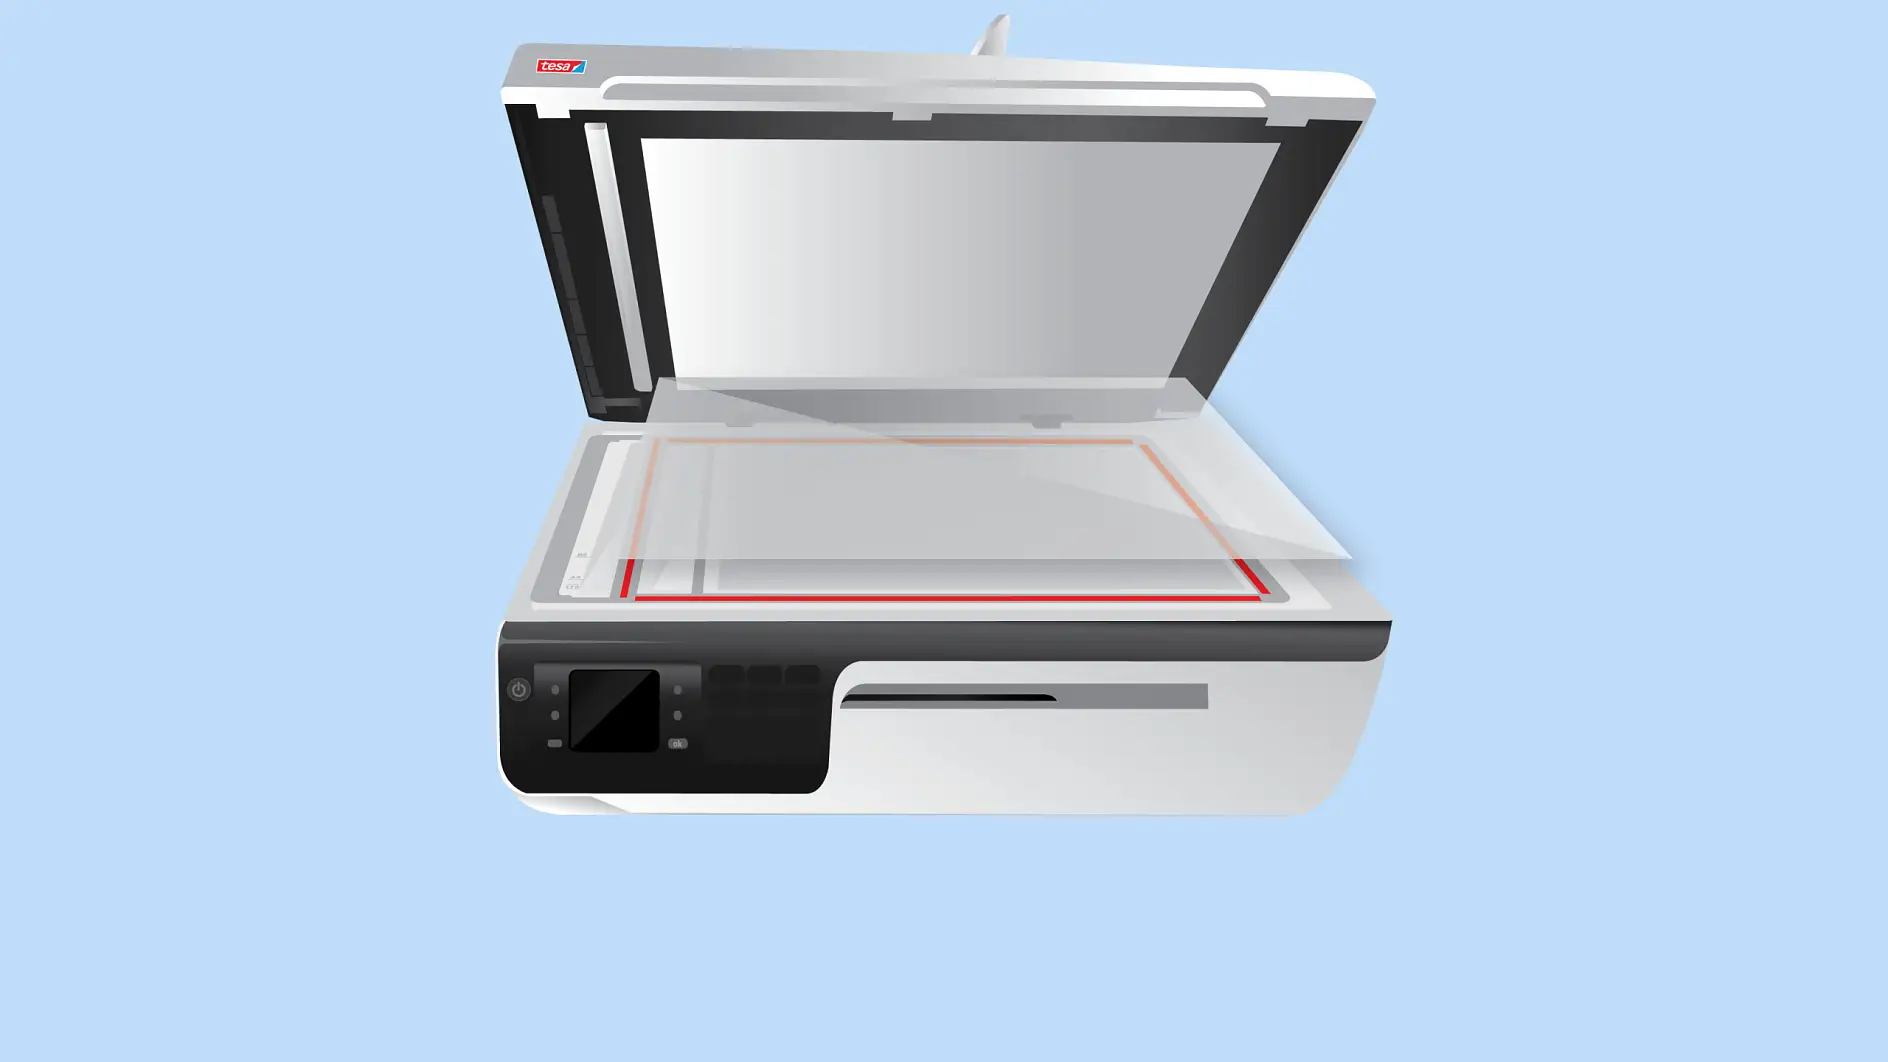 Os vidros de digitalizadores são montados no corpo das impressoras com fita biadesiva.